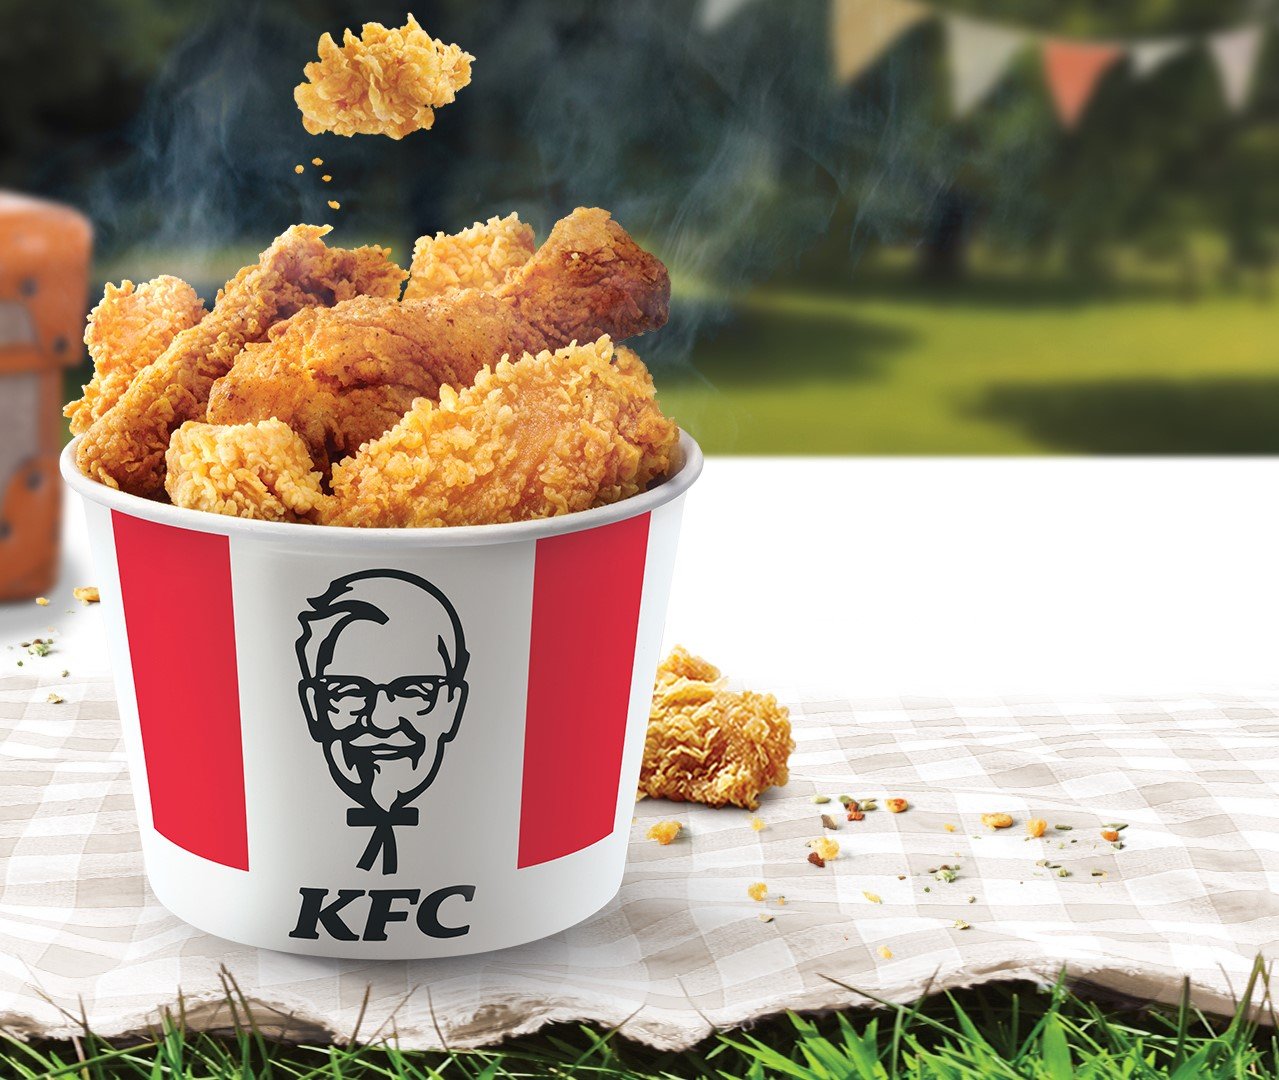  شبكة KFC تعلن عن افتتاح فرعين جديدين في البلاد: بئر السبع ودالية الكرمل-0